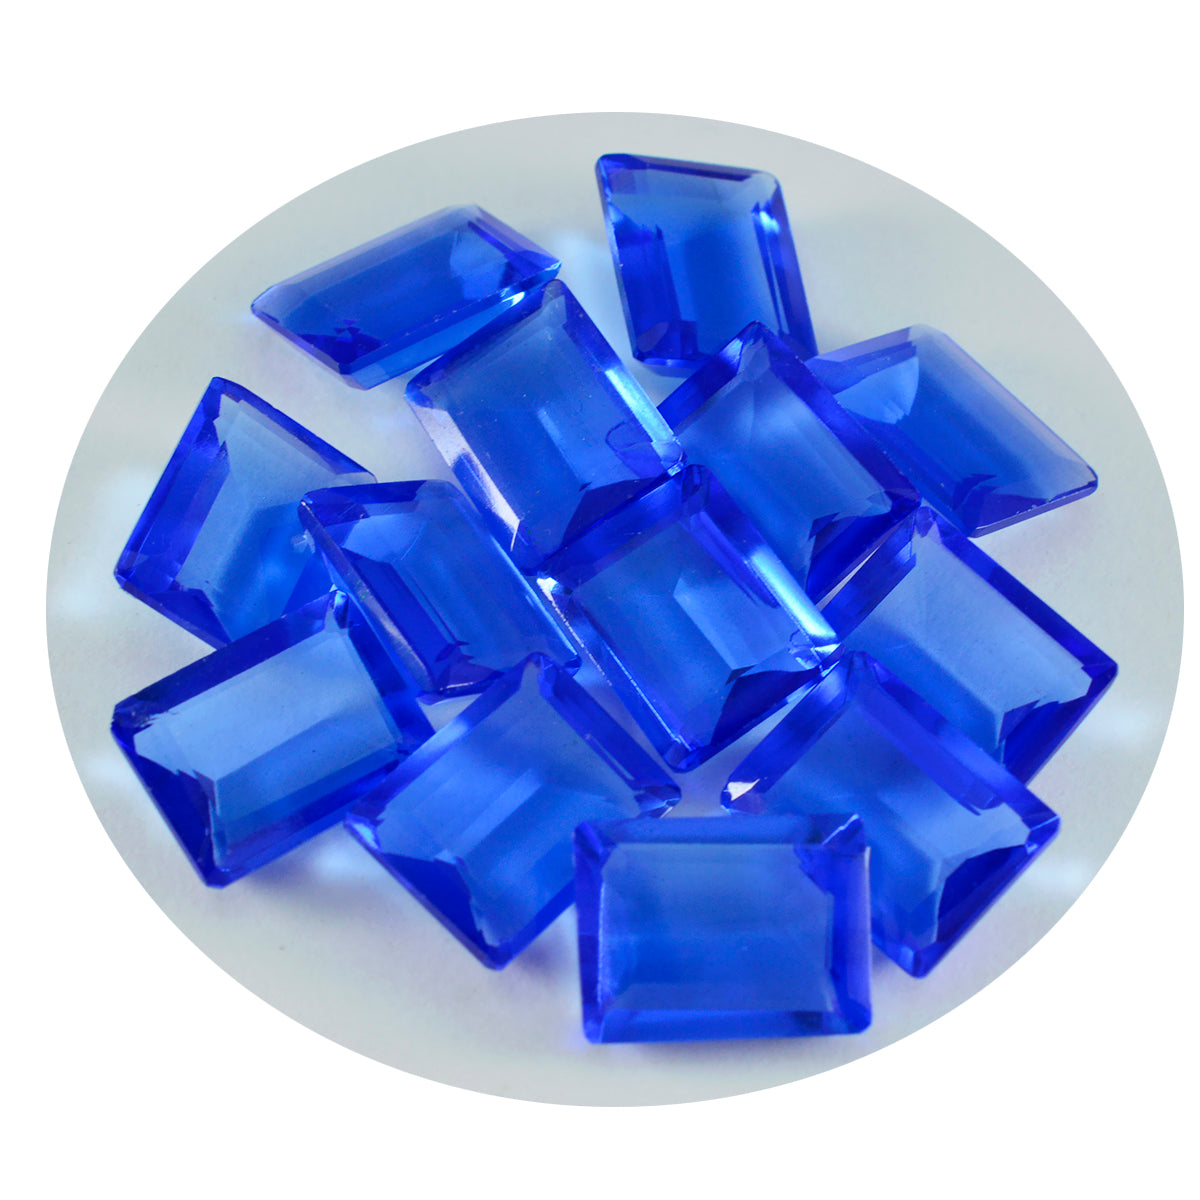 riyogems 1 шт. синий сапфир cz ограненный 10x12 мм восьмиугольная форма драгоценный камень прекрасного качества